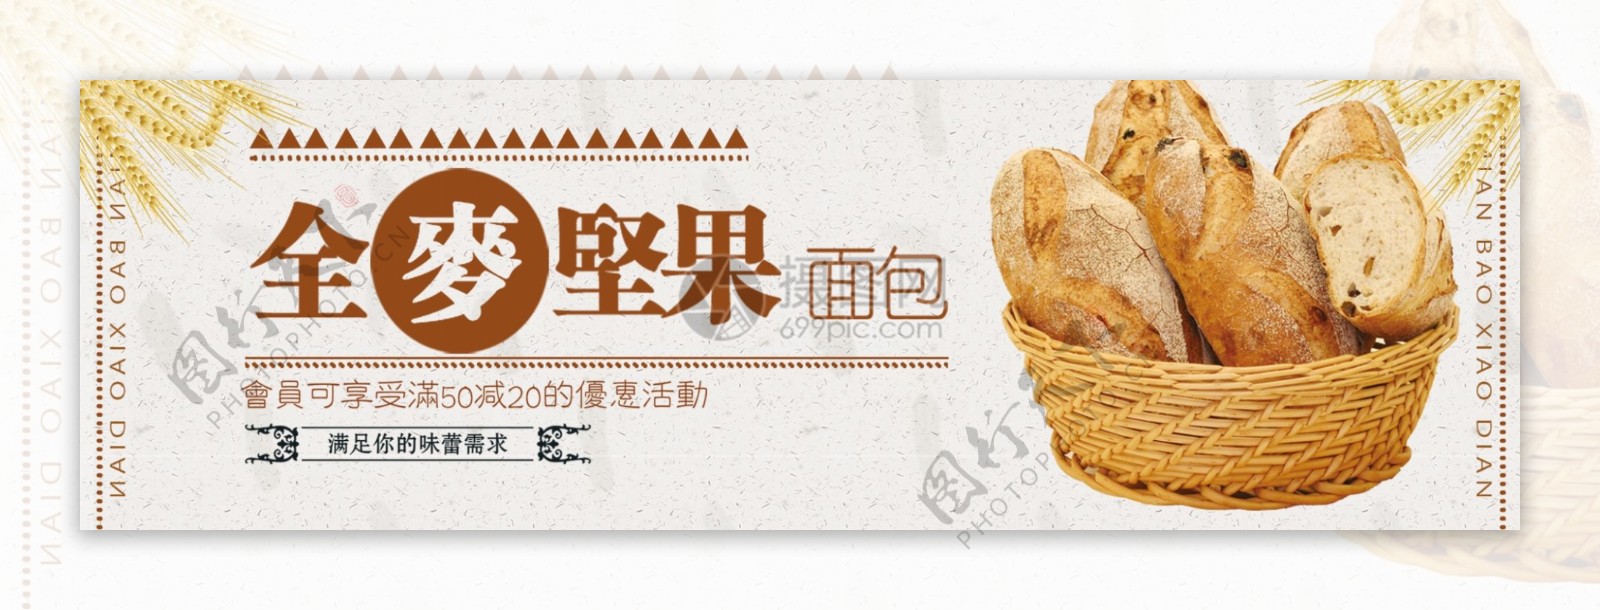 坚果面包食品淘宝banner